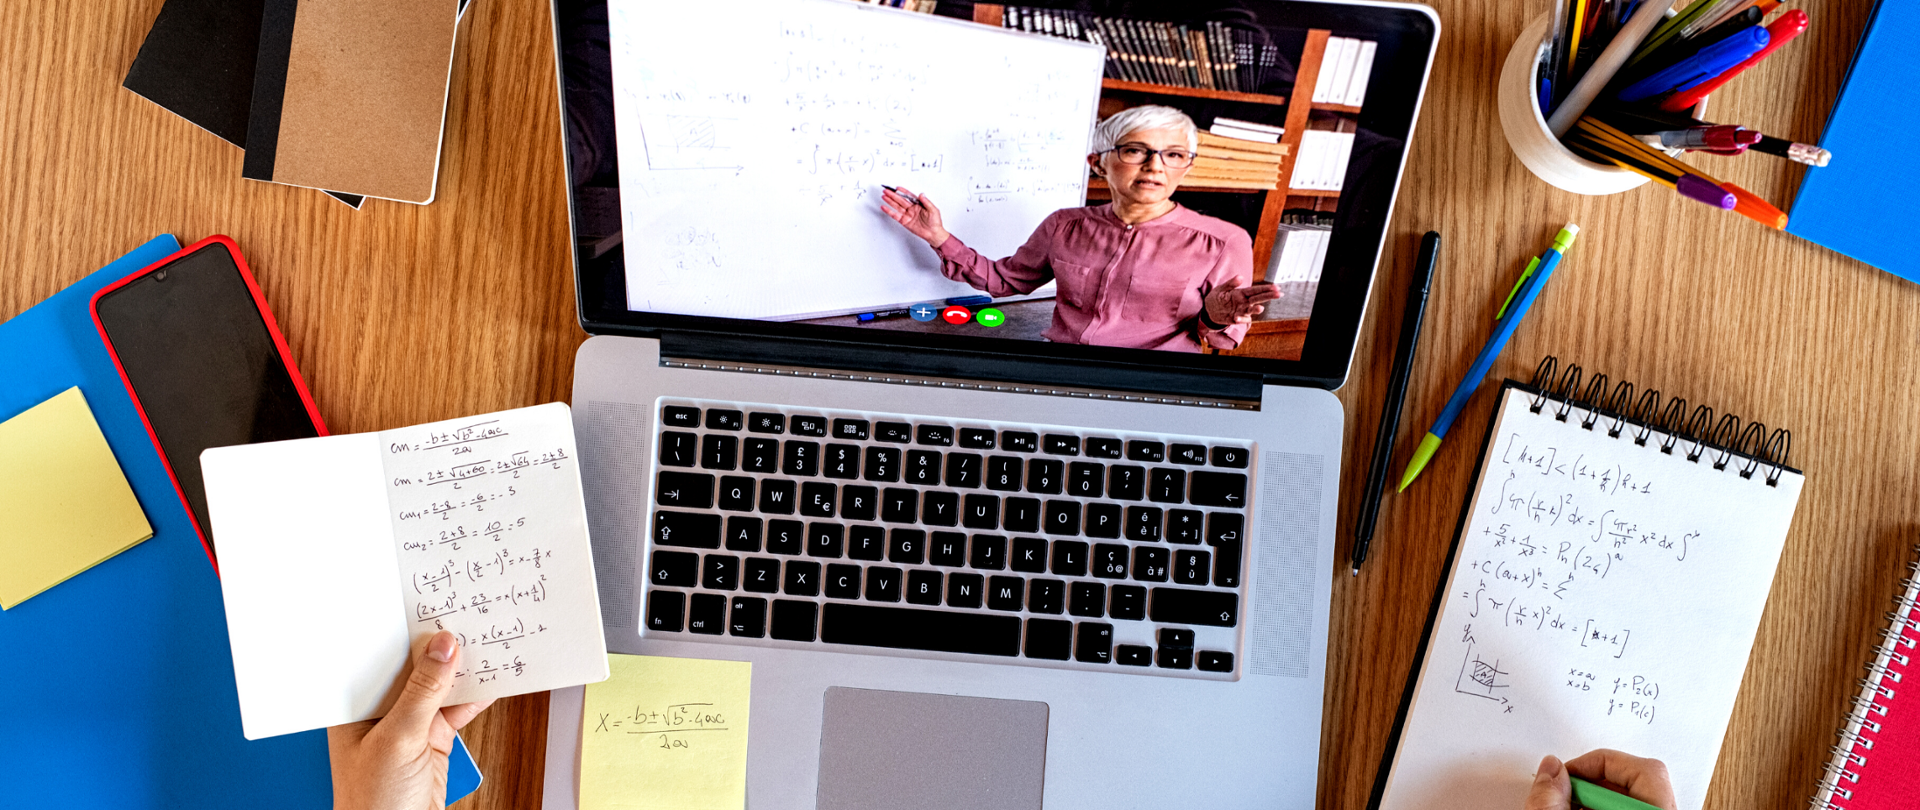 Włączony laptop. Na ekranie widoczna nauczycielka prowadząca zdalną lekcję matematyki. 